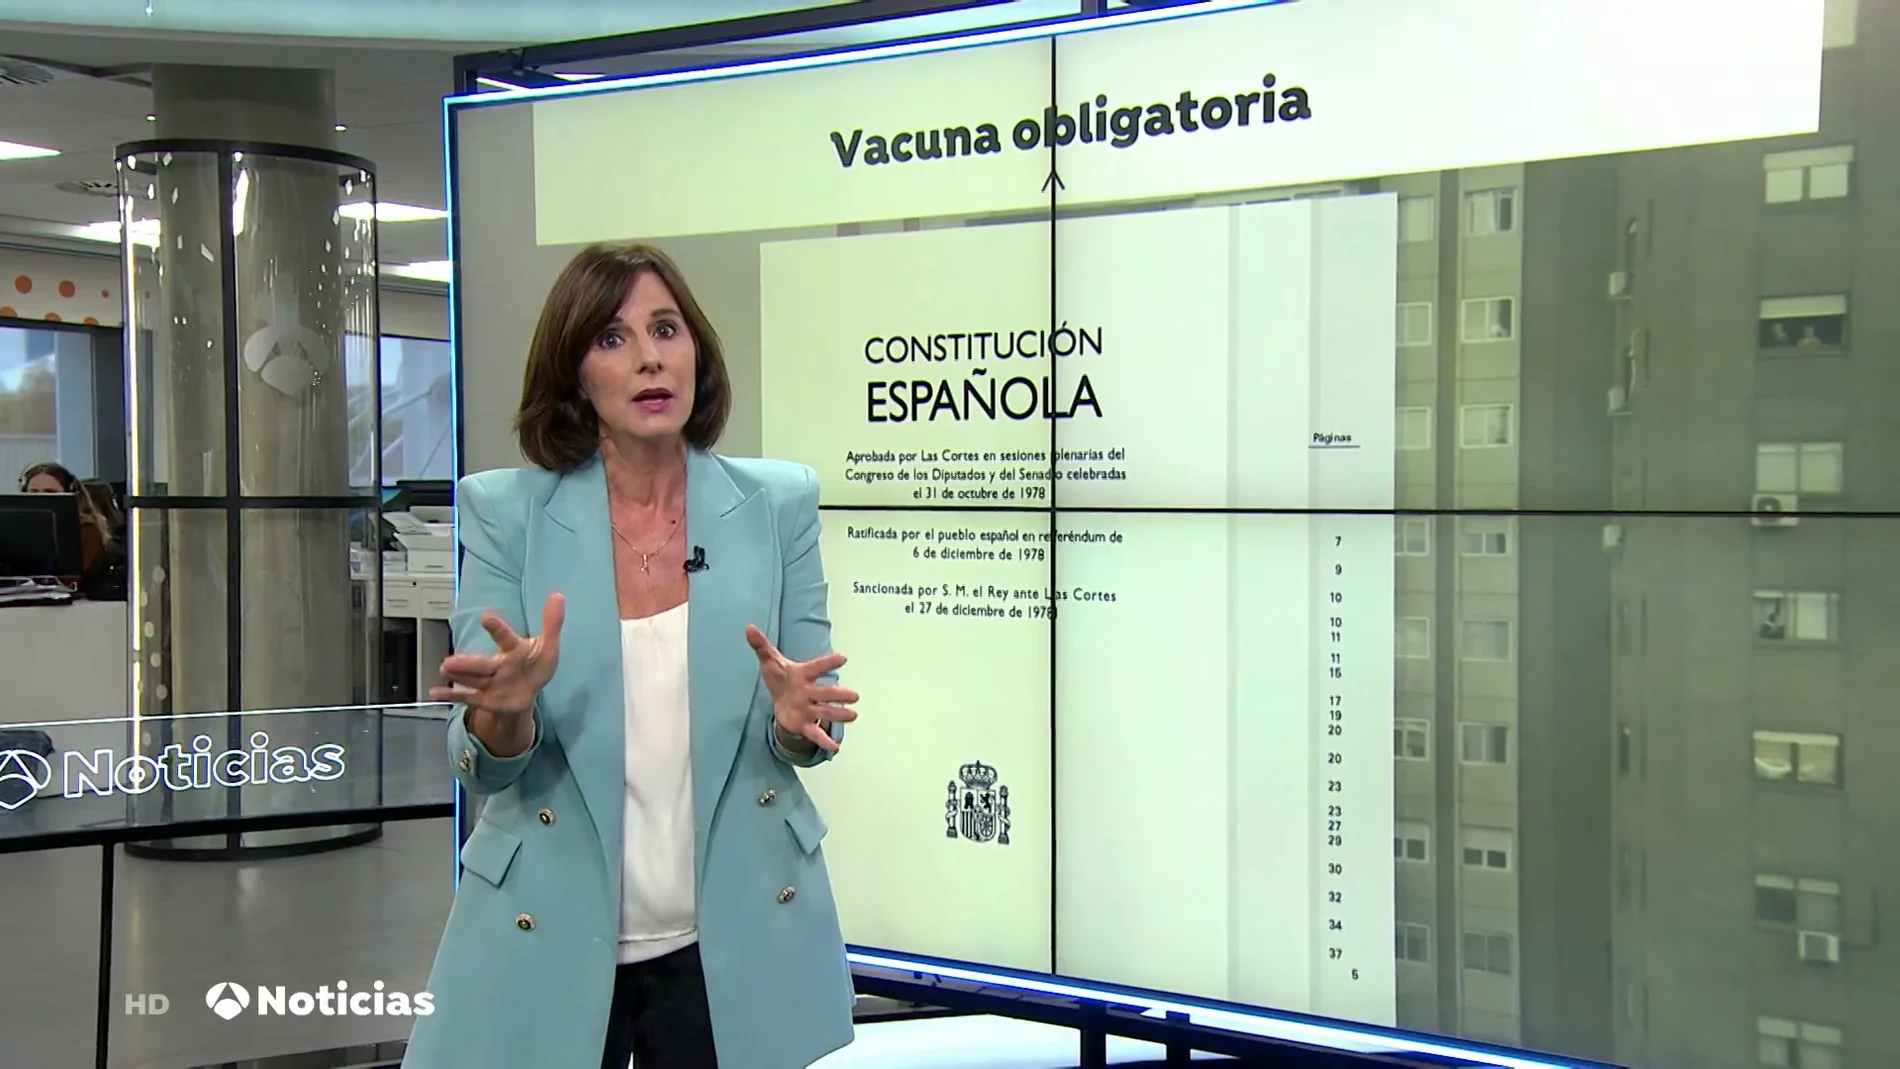 ¿Sería legal en España obligar a un ciudadano a vacunarse contra el coronavirus?